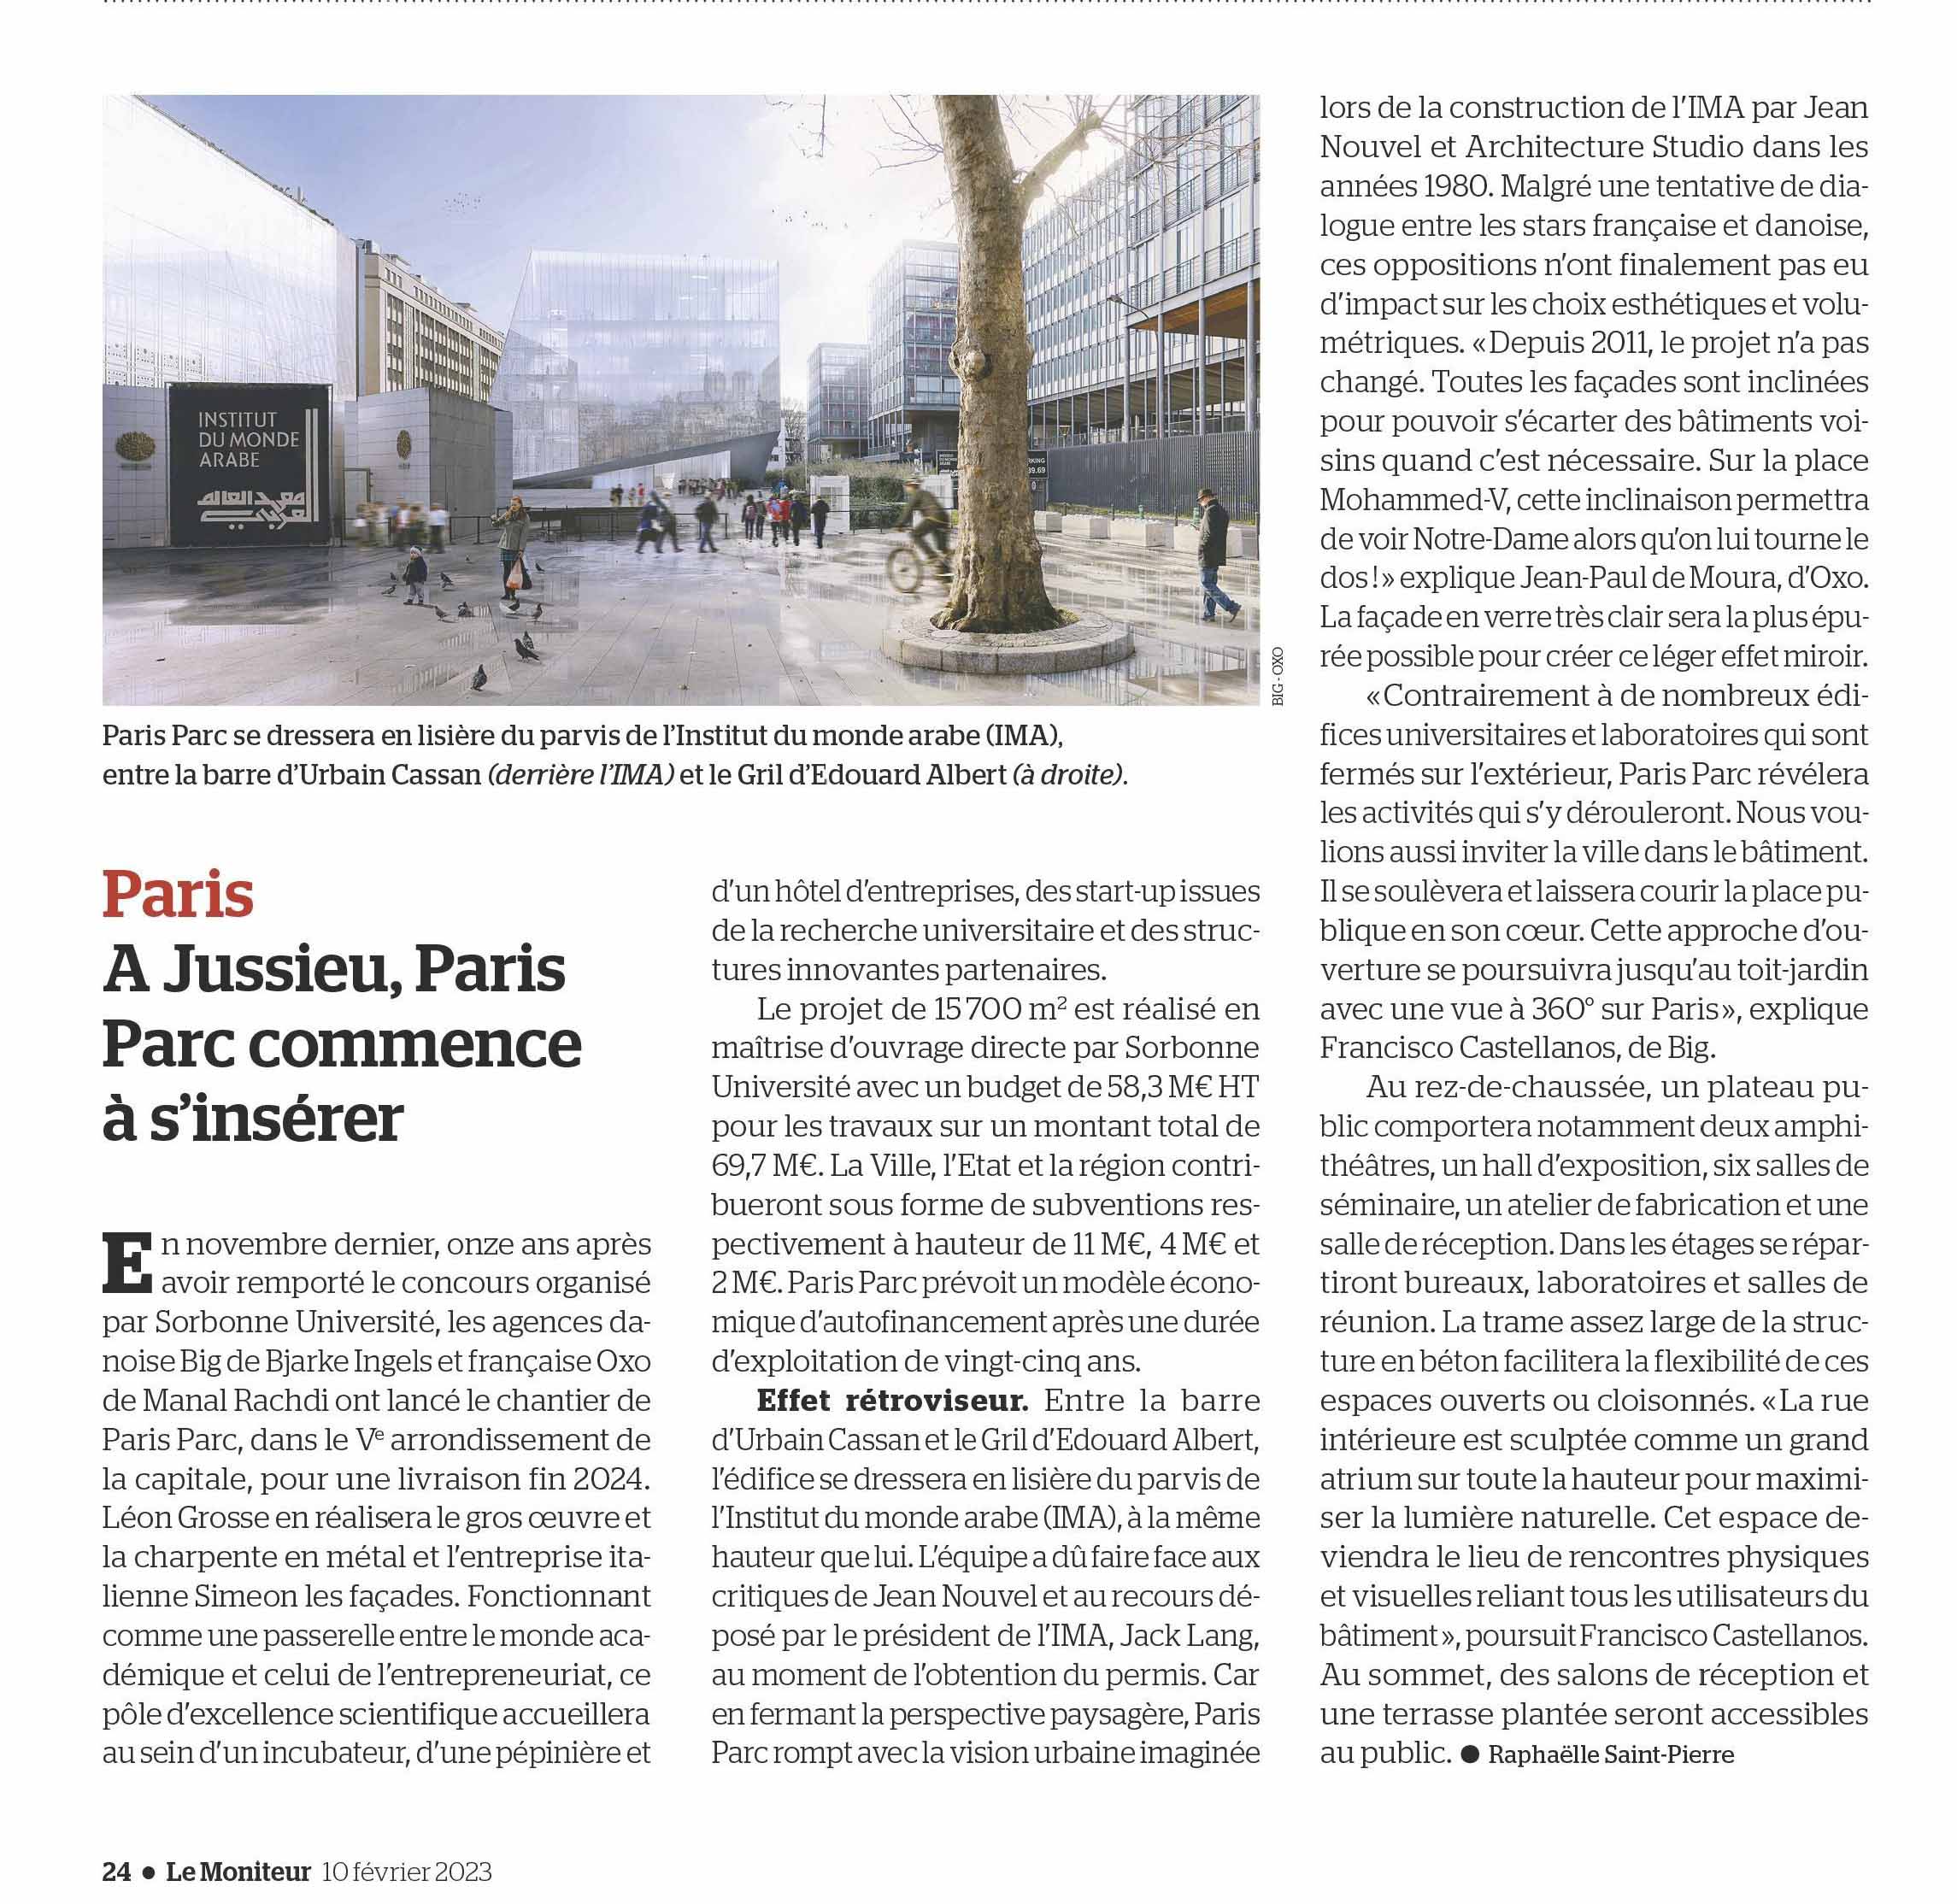 FEVRIER 2023 - PARIS PARC, le chantier est lancé